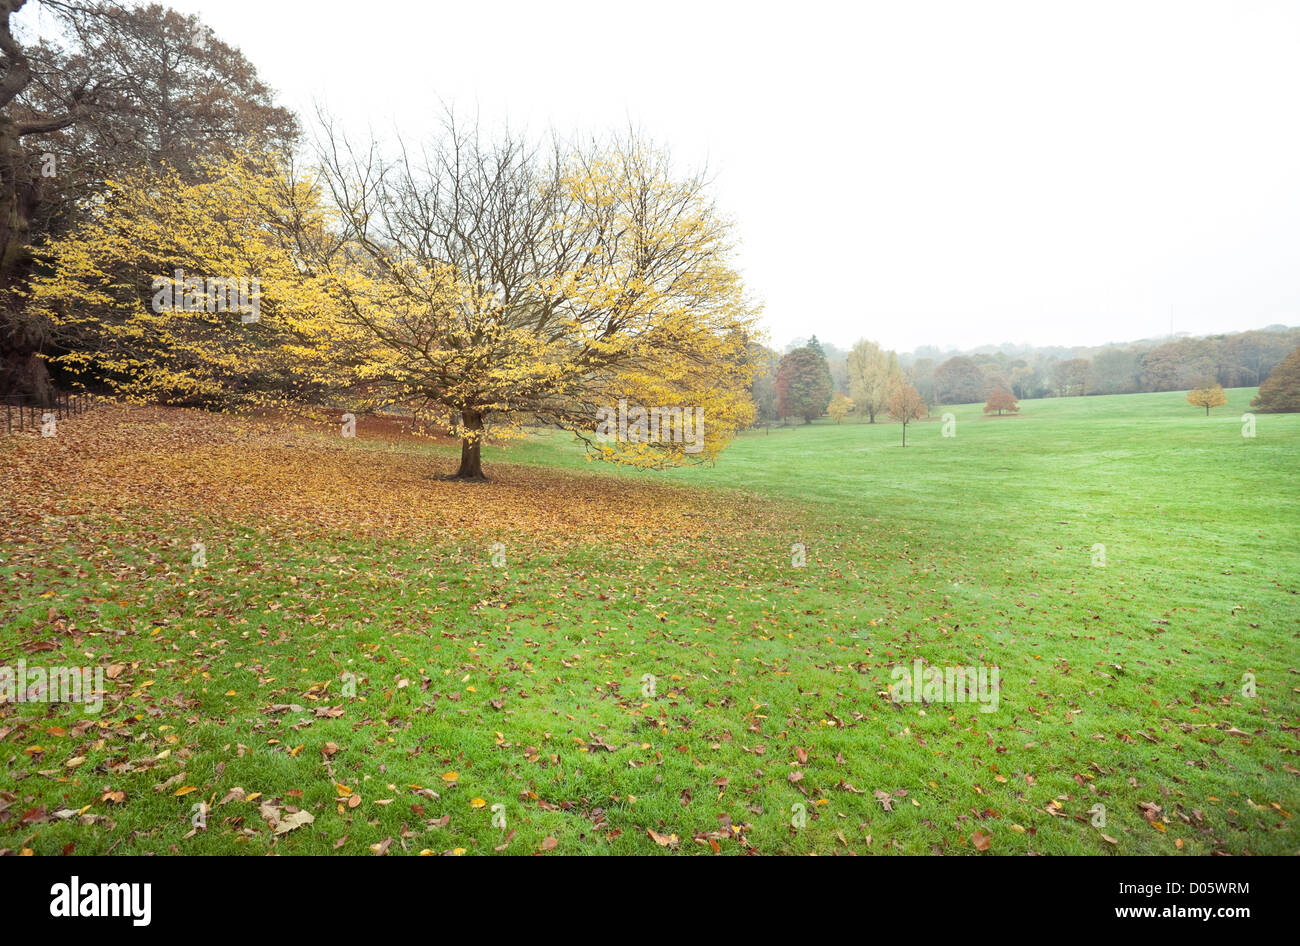 Un arbre isolé avec des feuilles jaunes sur un champ d'herbe, Hampstead Heath, Hampstead, Londres, Angleterre, Royaume-Uni. Banque D'Images